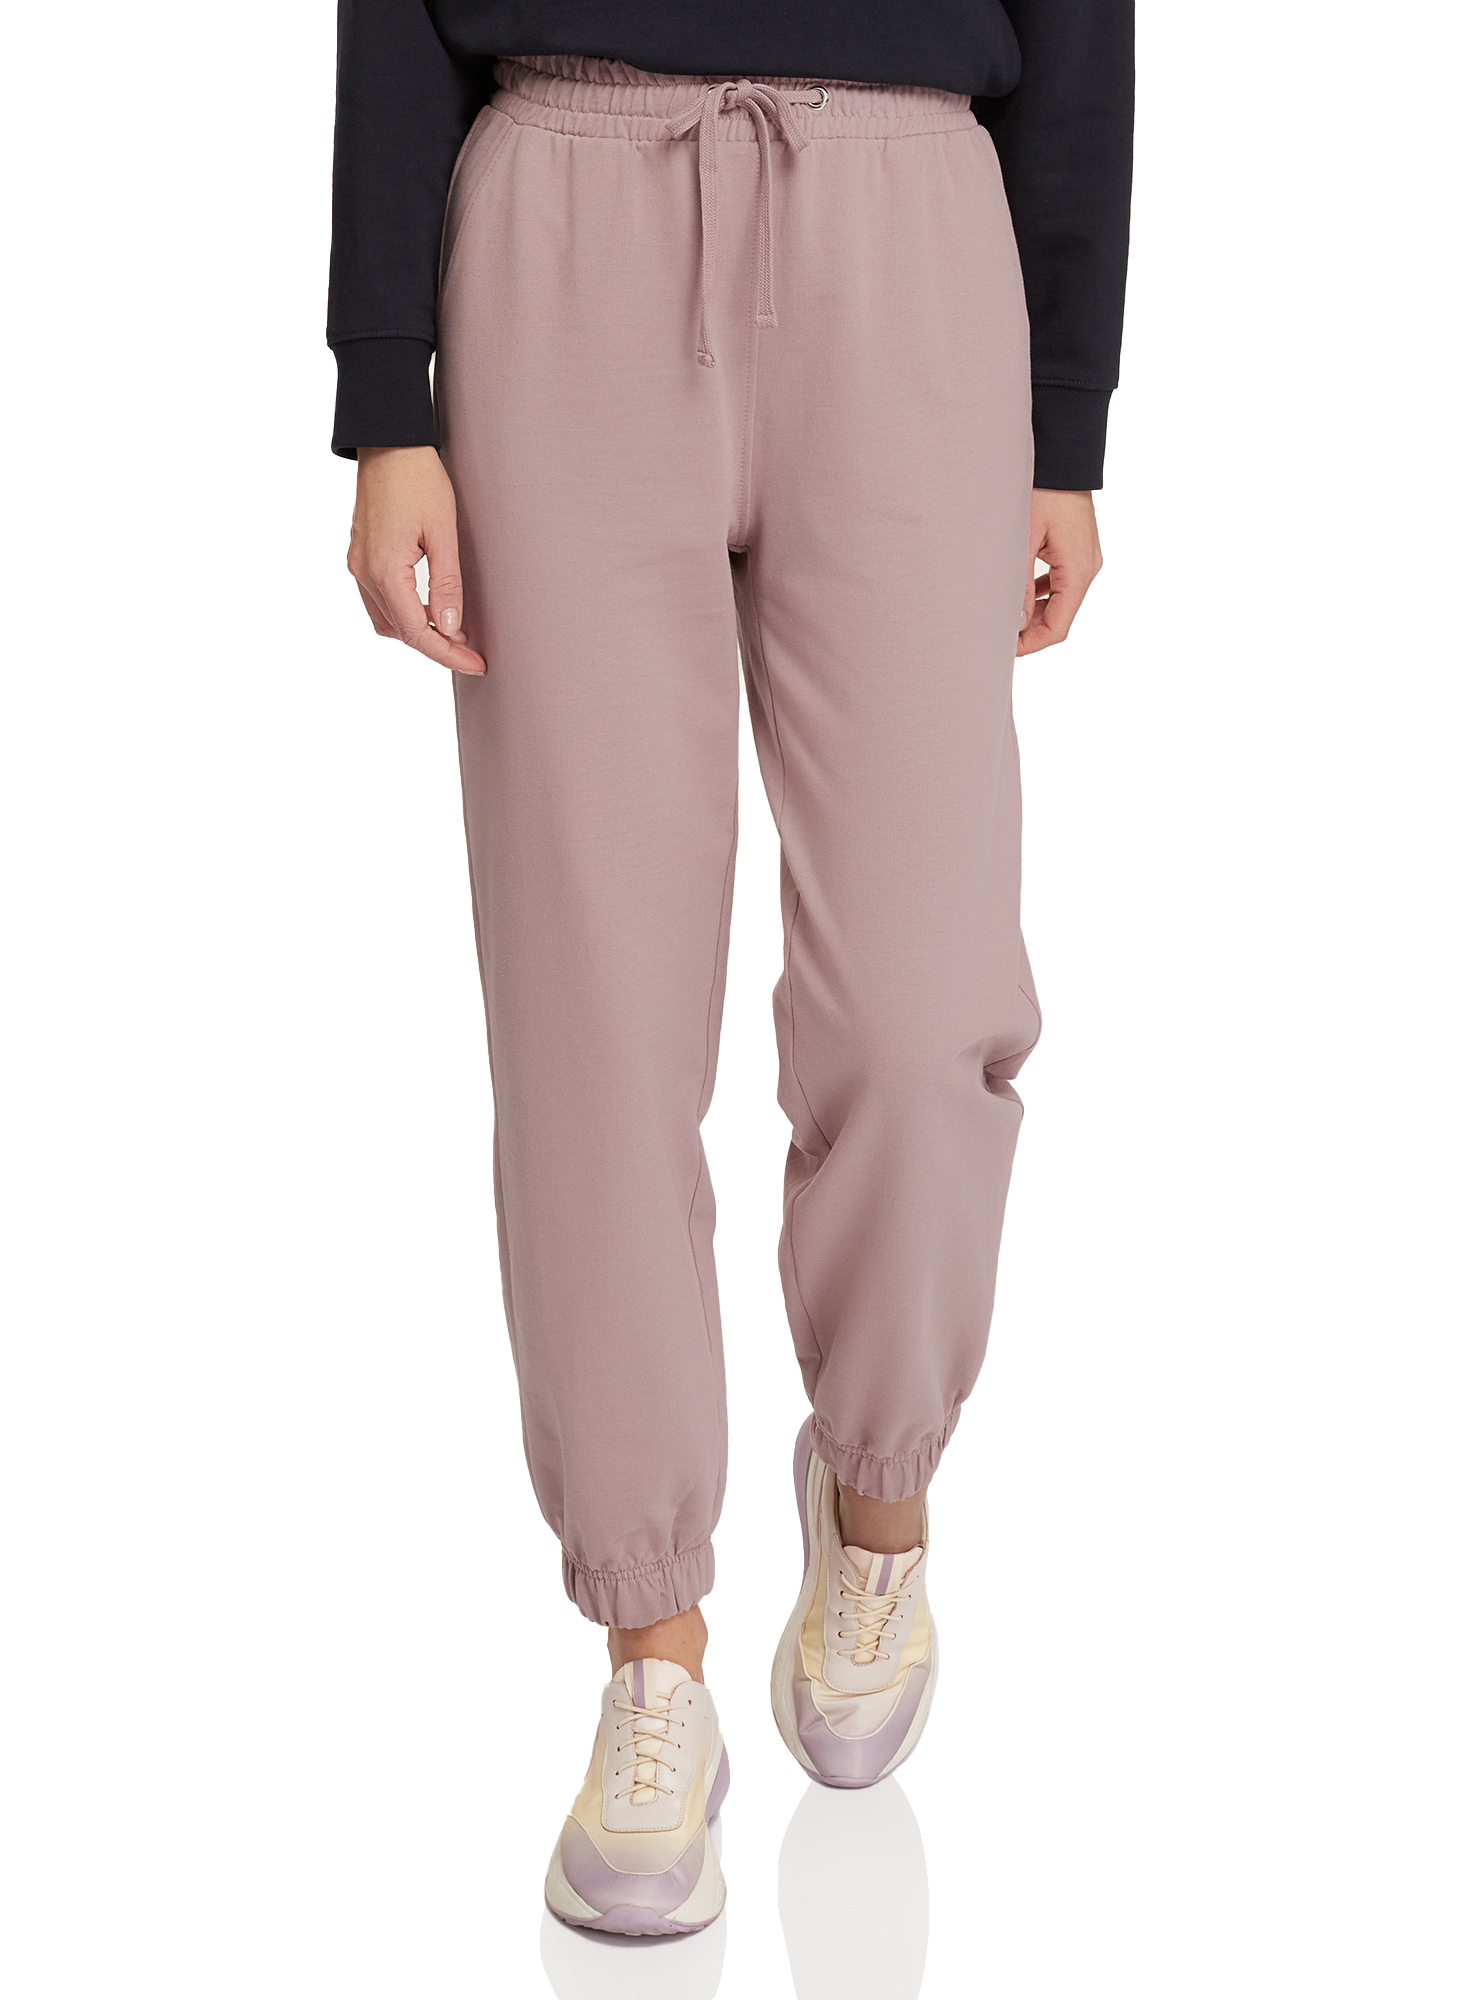 Спортивные брюки женские oodji 16701086-3 розовые L